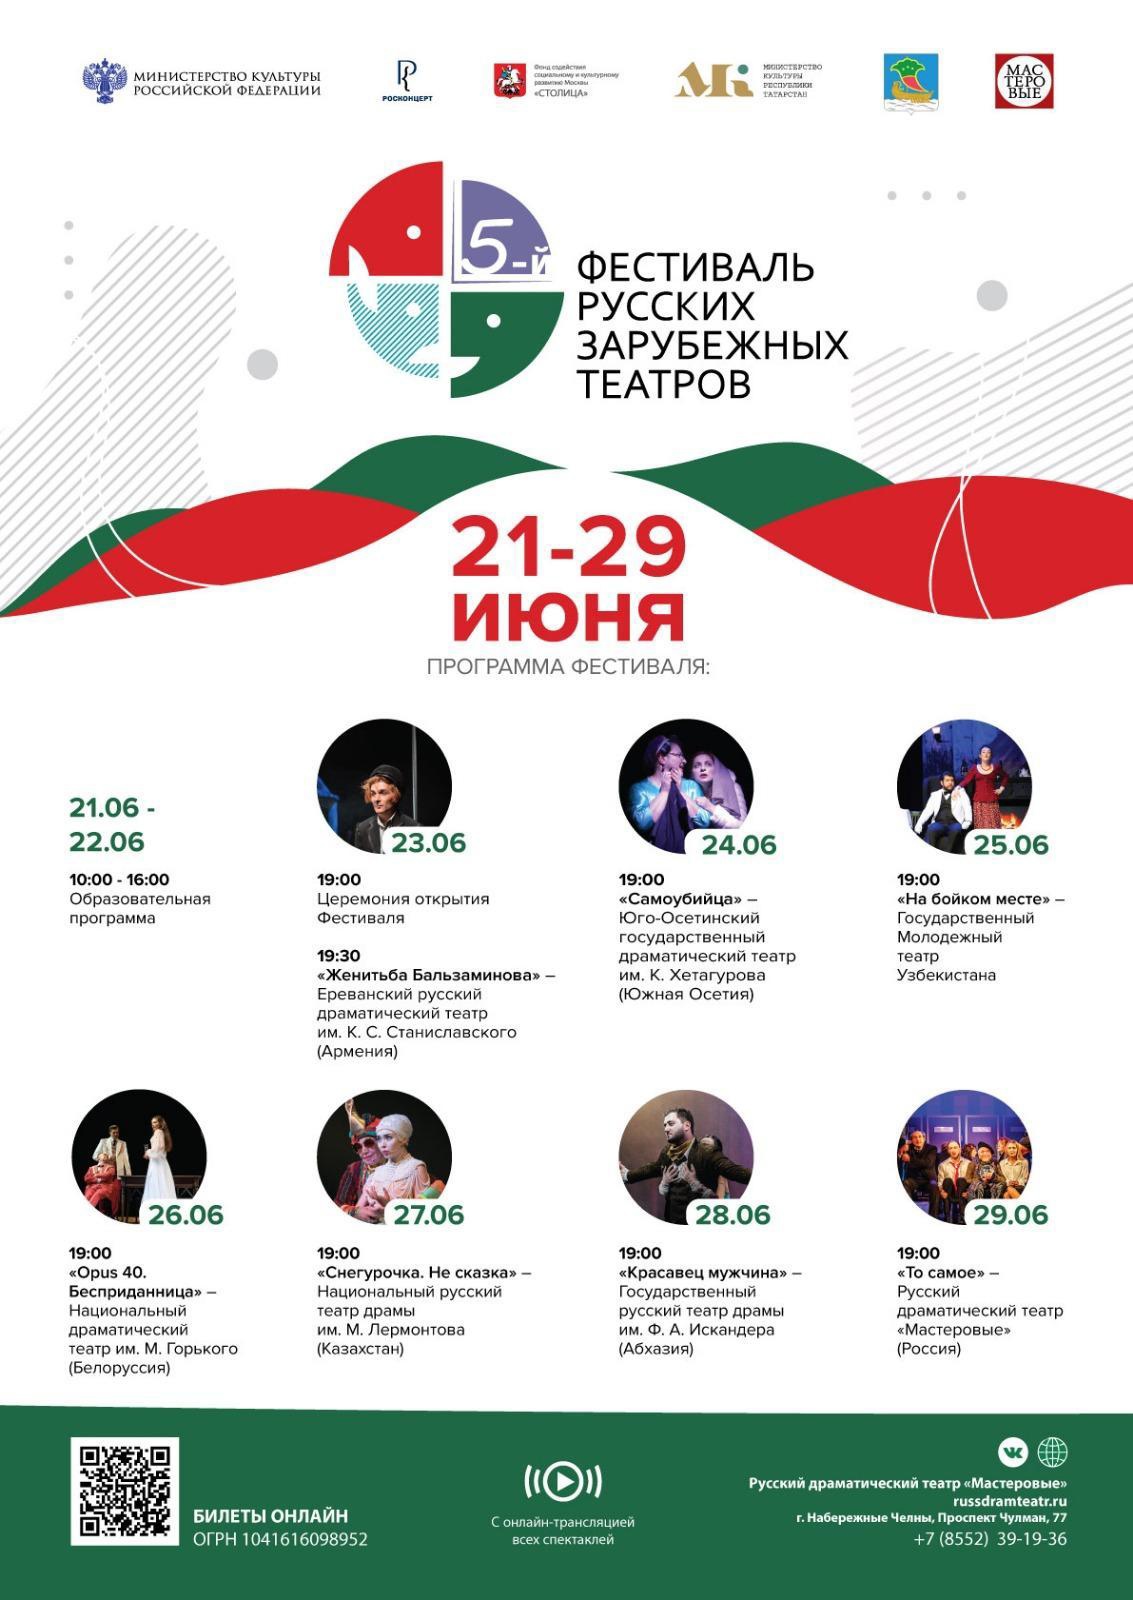 5-й Международный фестиваль русских зарубежных театров пройдет в Набережных Челнах с 21 по 29 июня 2023 года